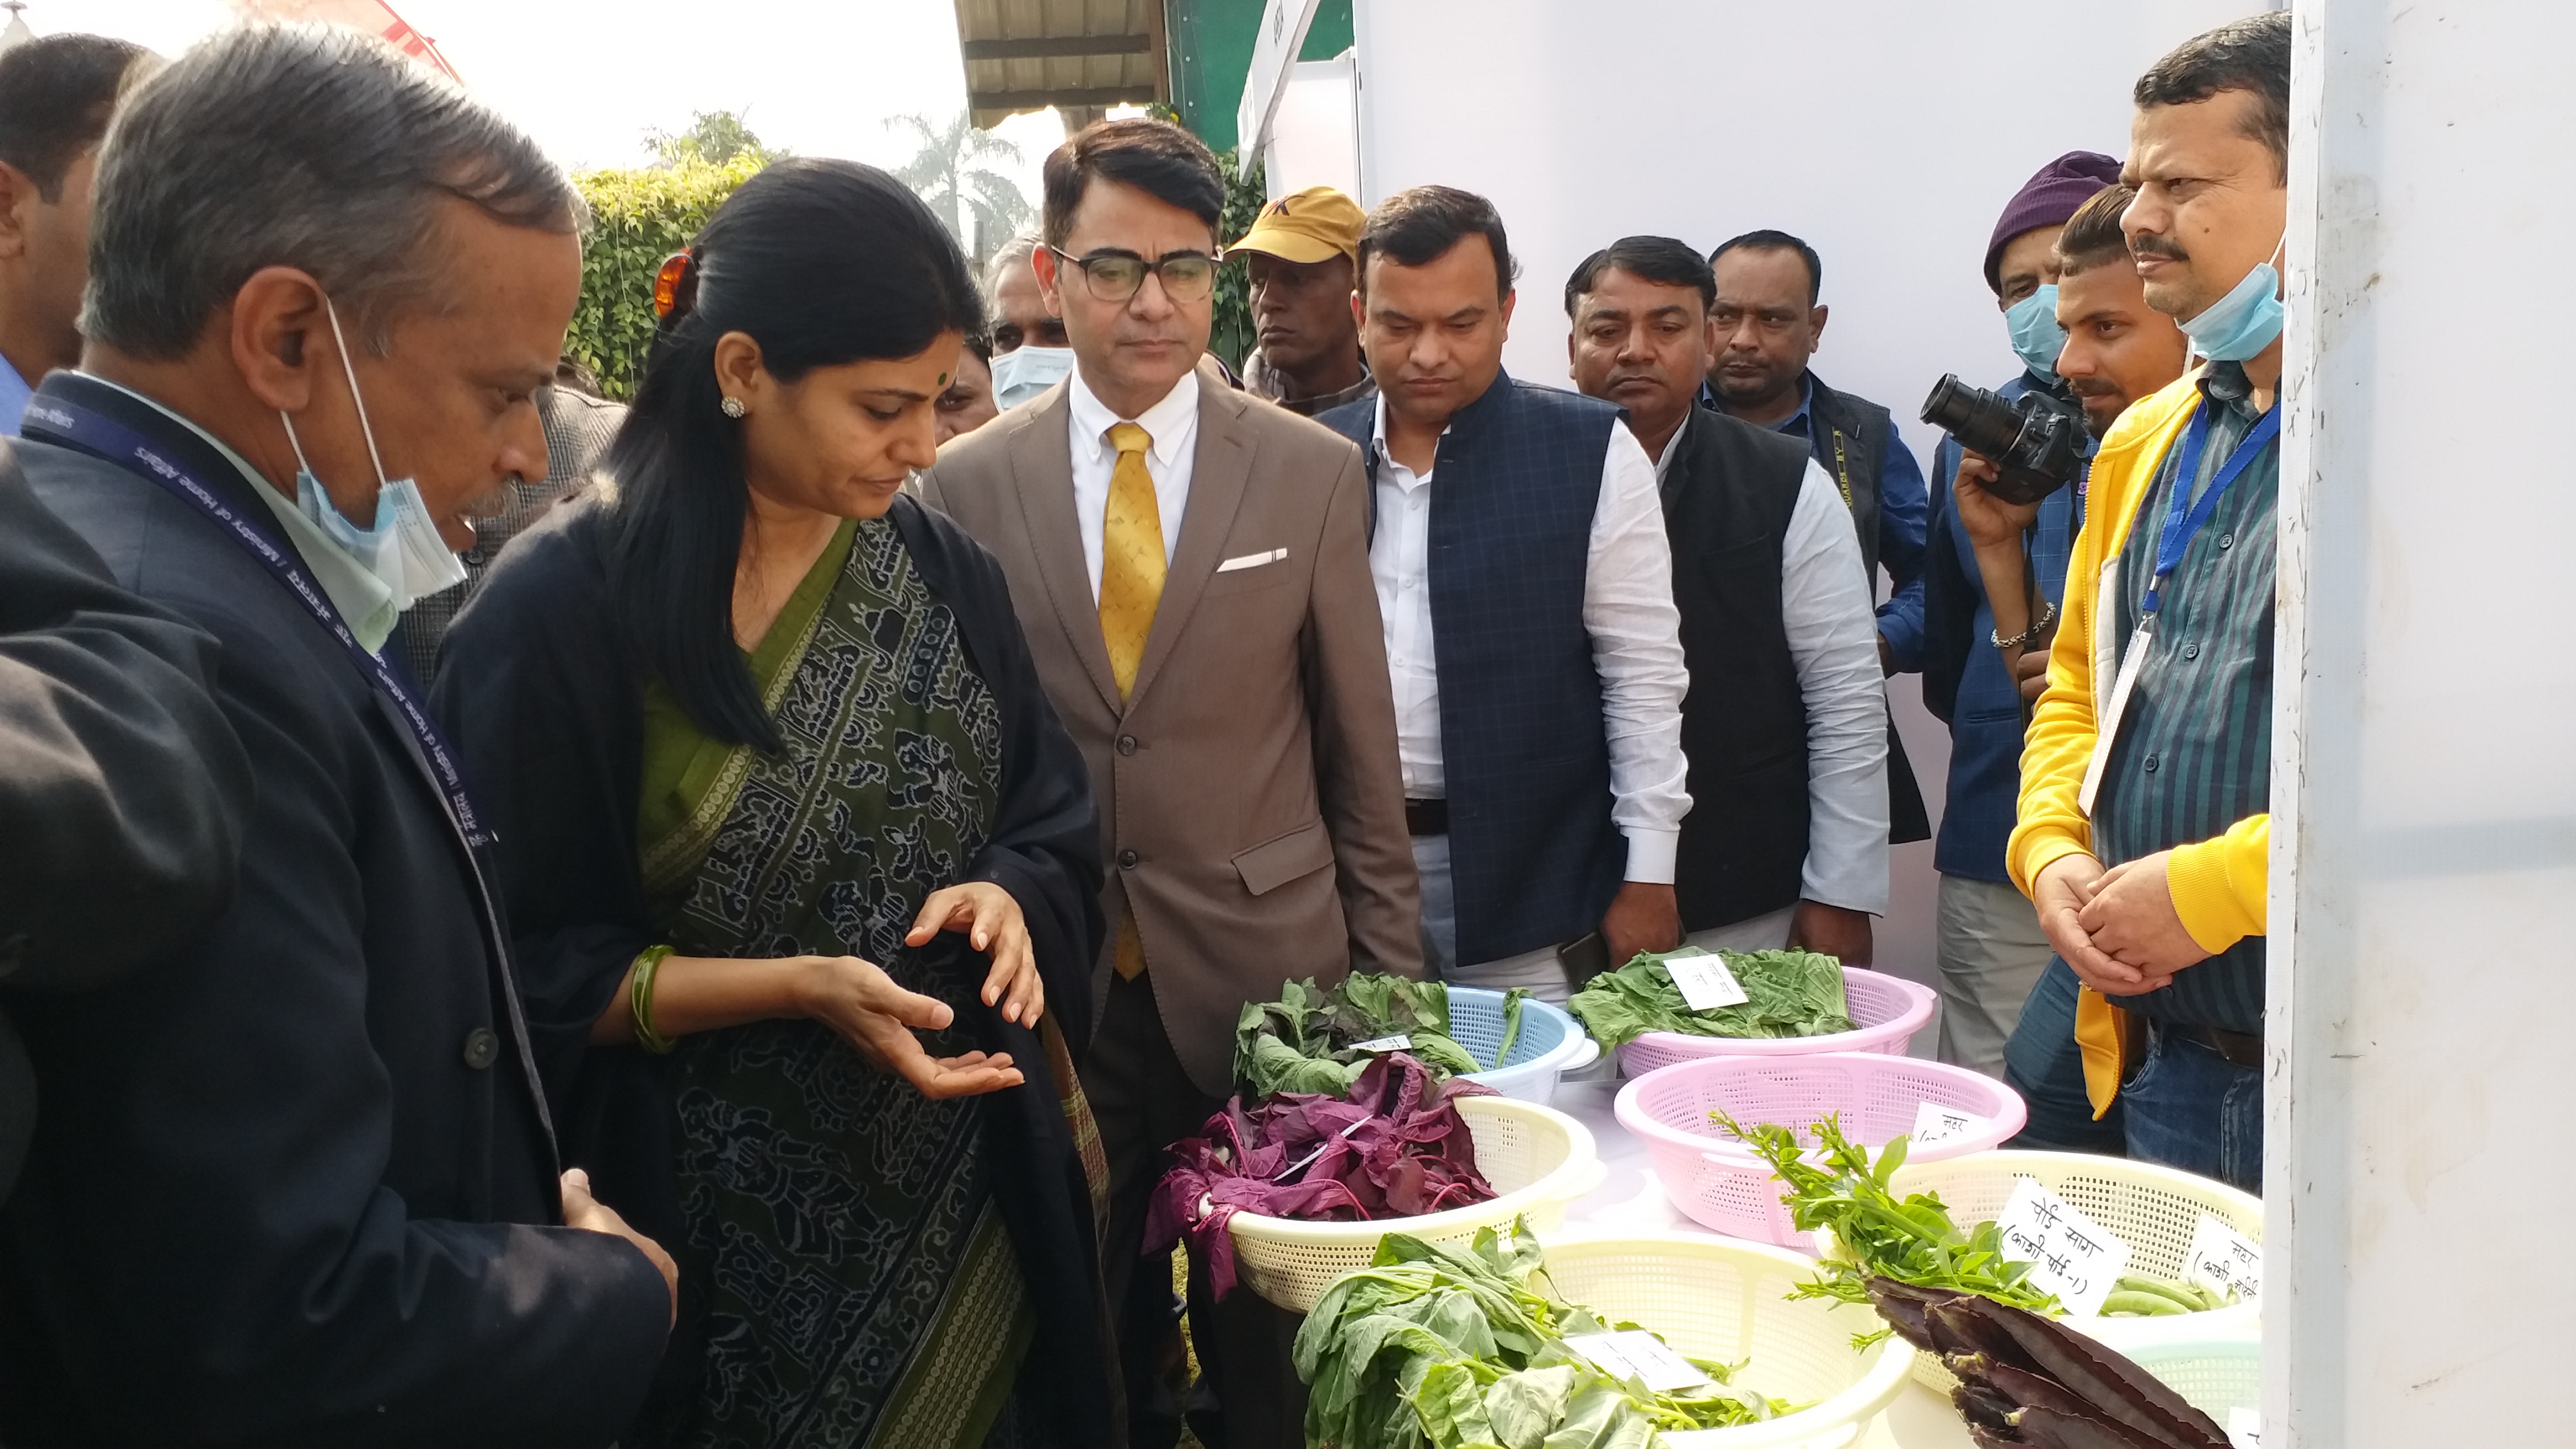 मिर्जापुर में केंद्रीय वाणिज्य व उद्योग राज्यमंत्री अनुप्रिया पटेल ने कृषि उत्पादों की प्रदर्शनी भी देखी.